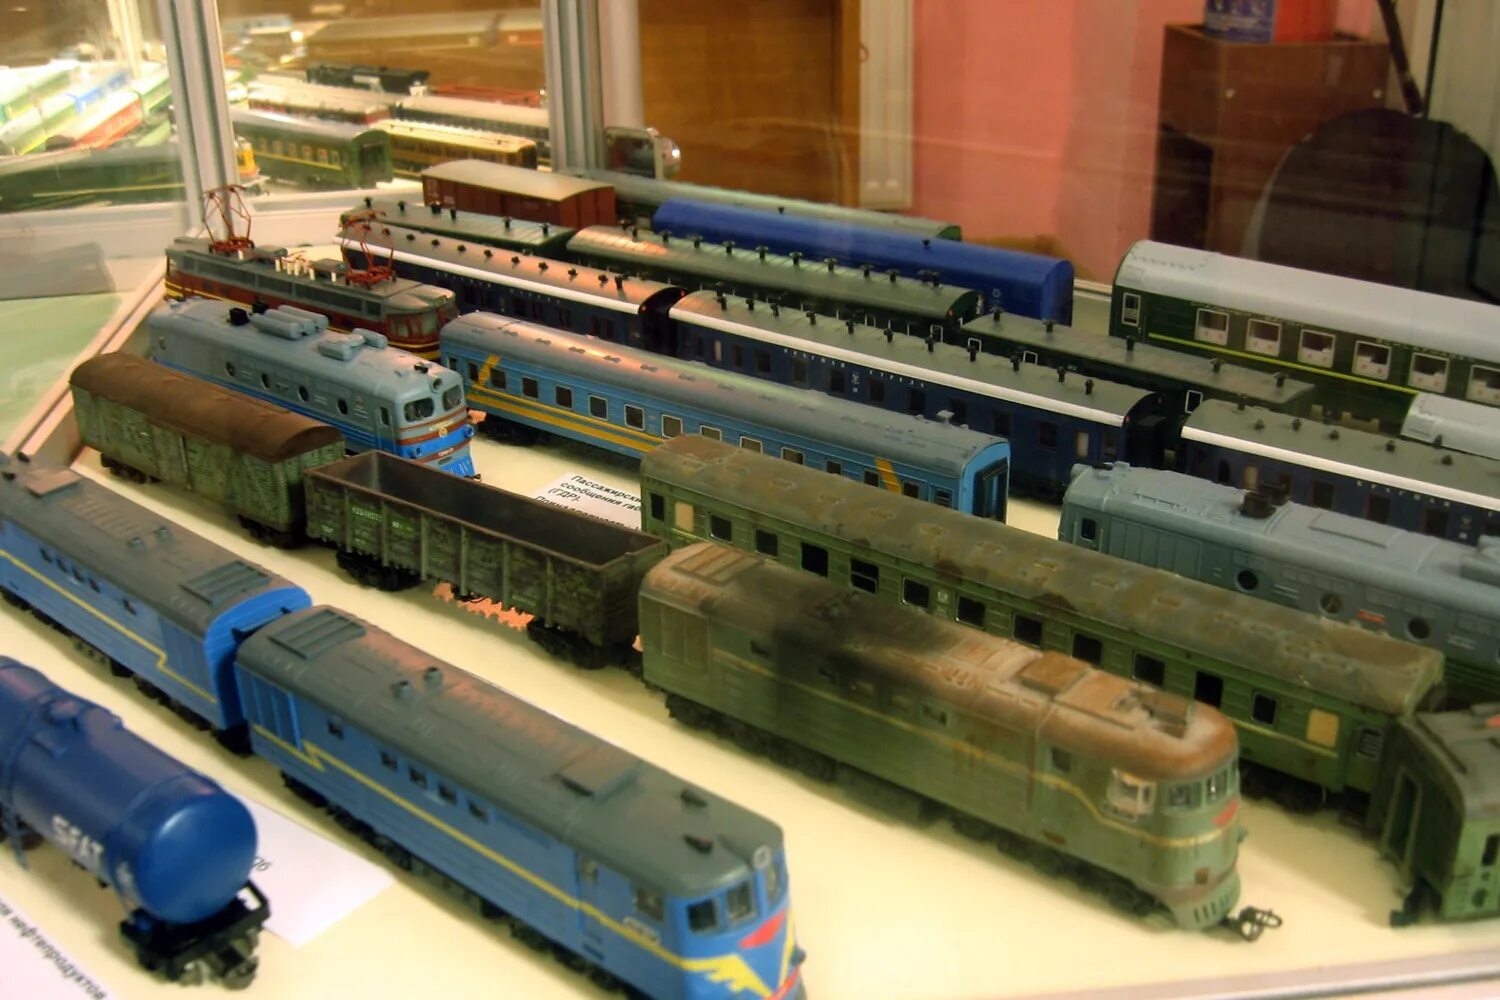 Т т collection. Коллекция поездов. Коллекция моделей поездов. Макеты заброшенных поездов. Барахолка моделей железных дорог.